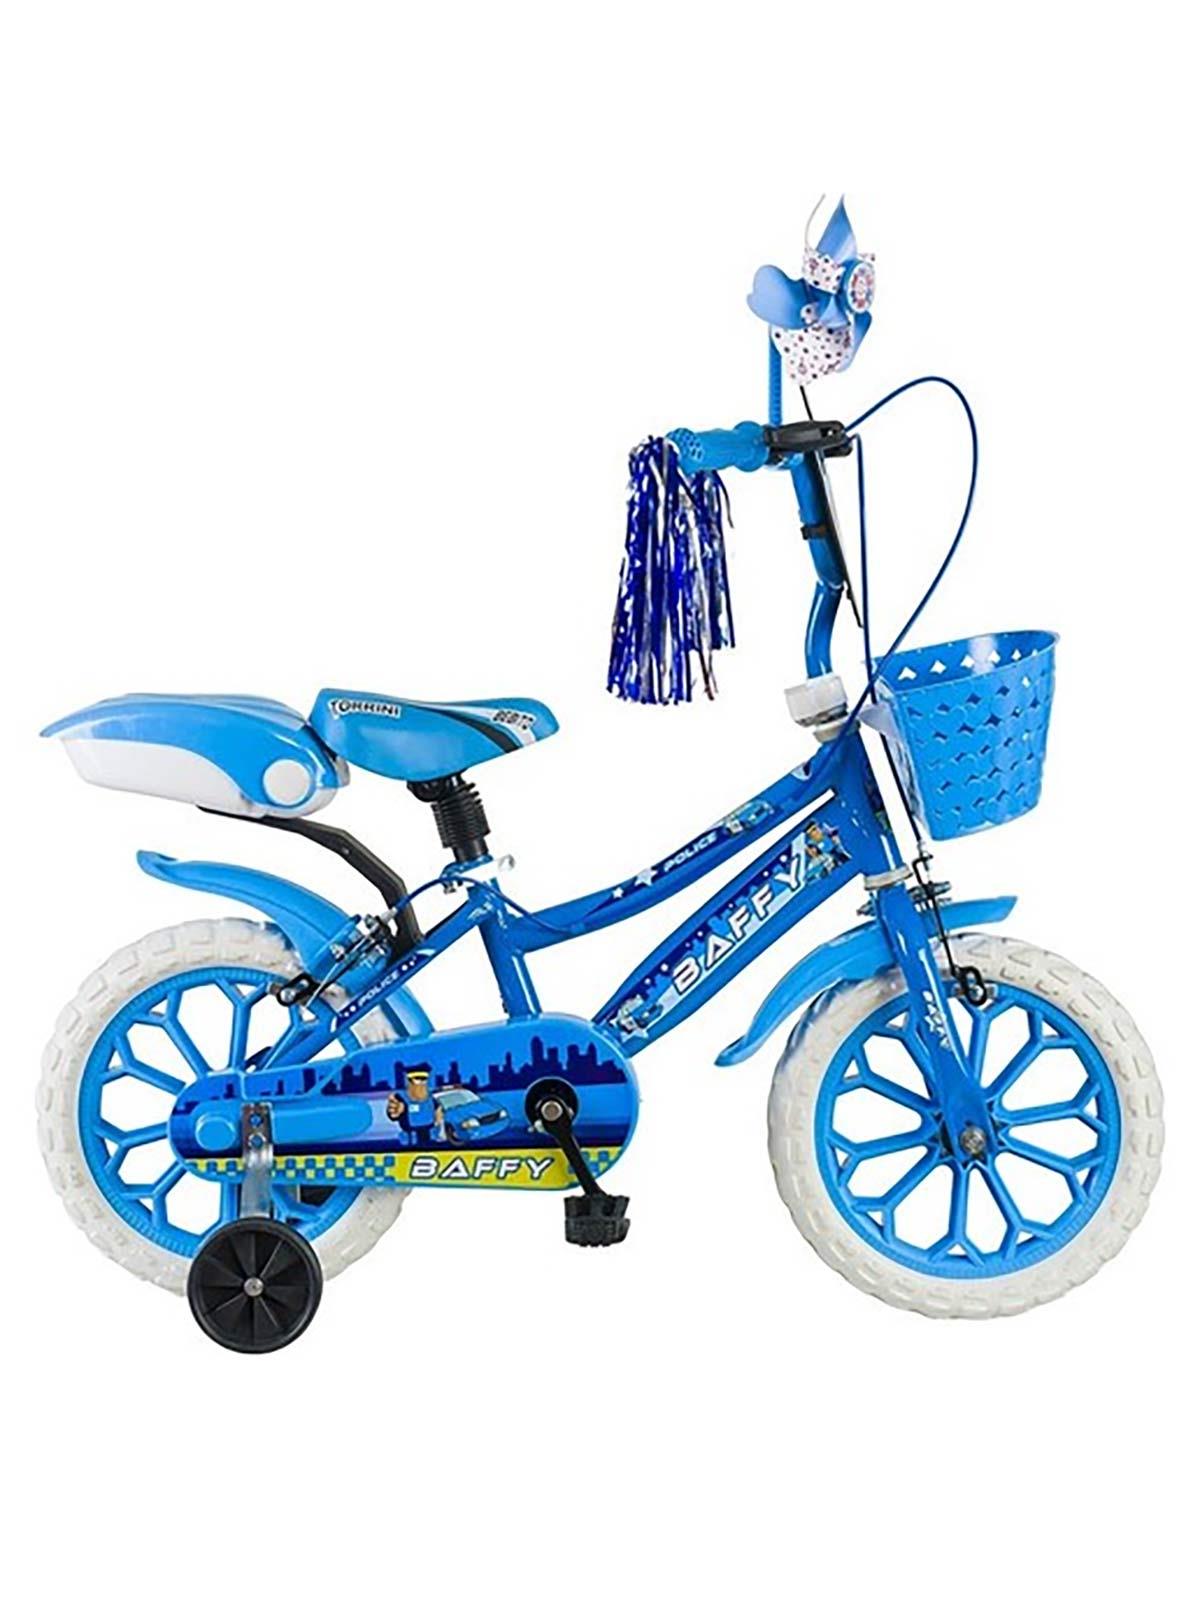 Tunca Baffy 15 Jant 3 - 6 Yaş Çocuk Bisikleti Mavi